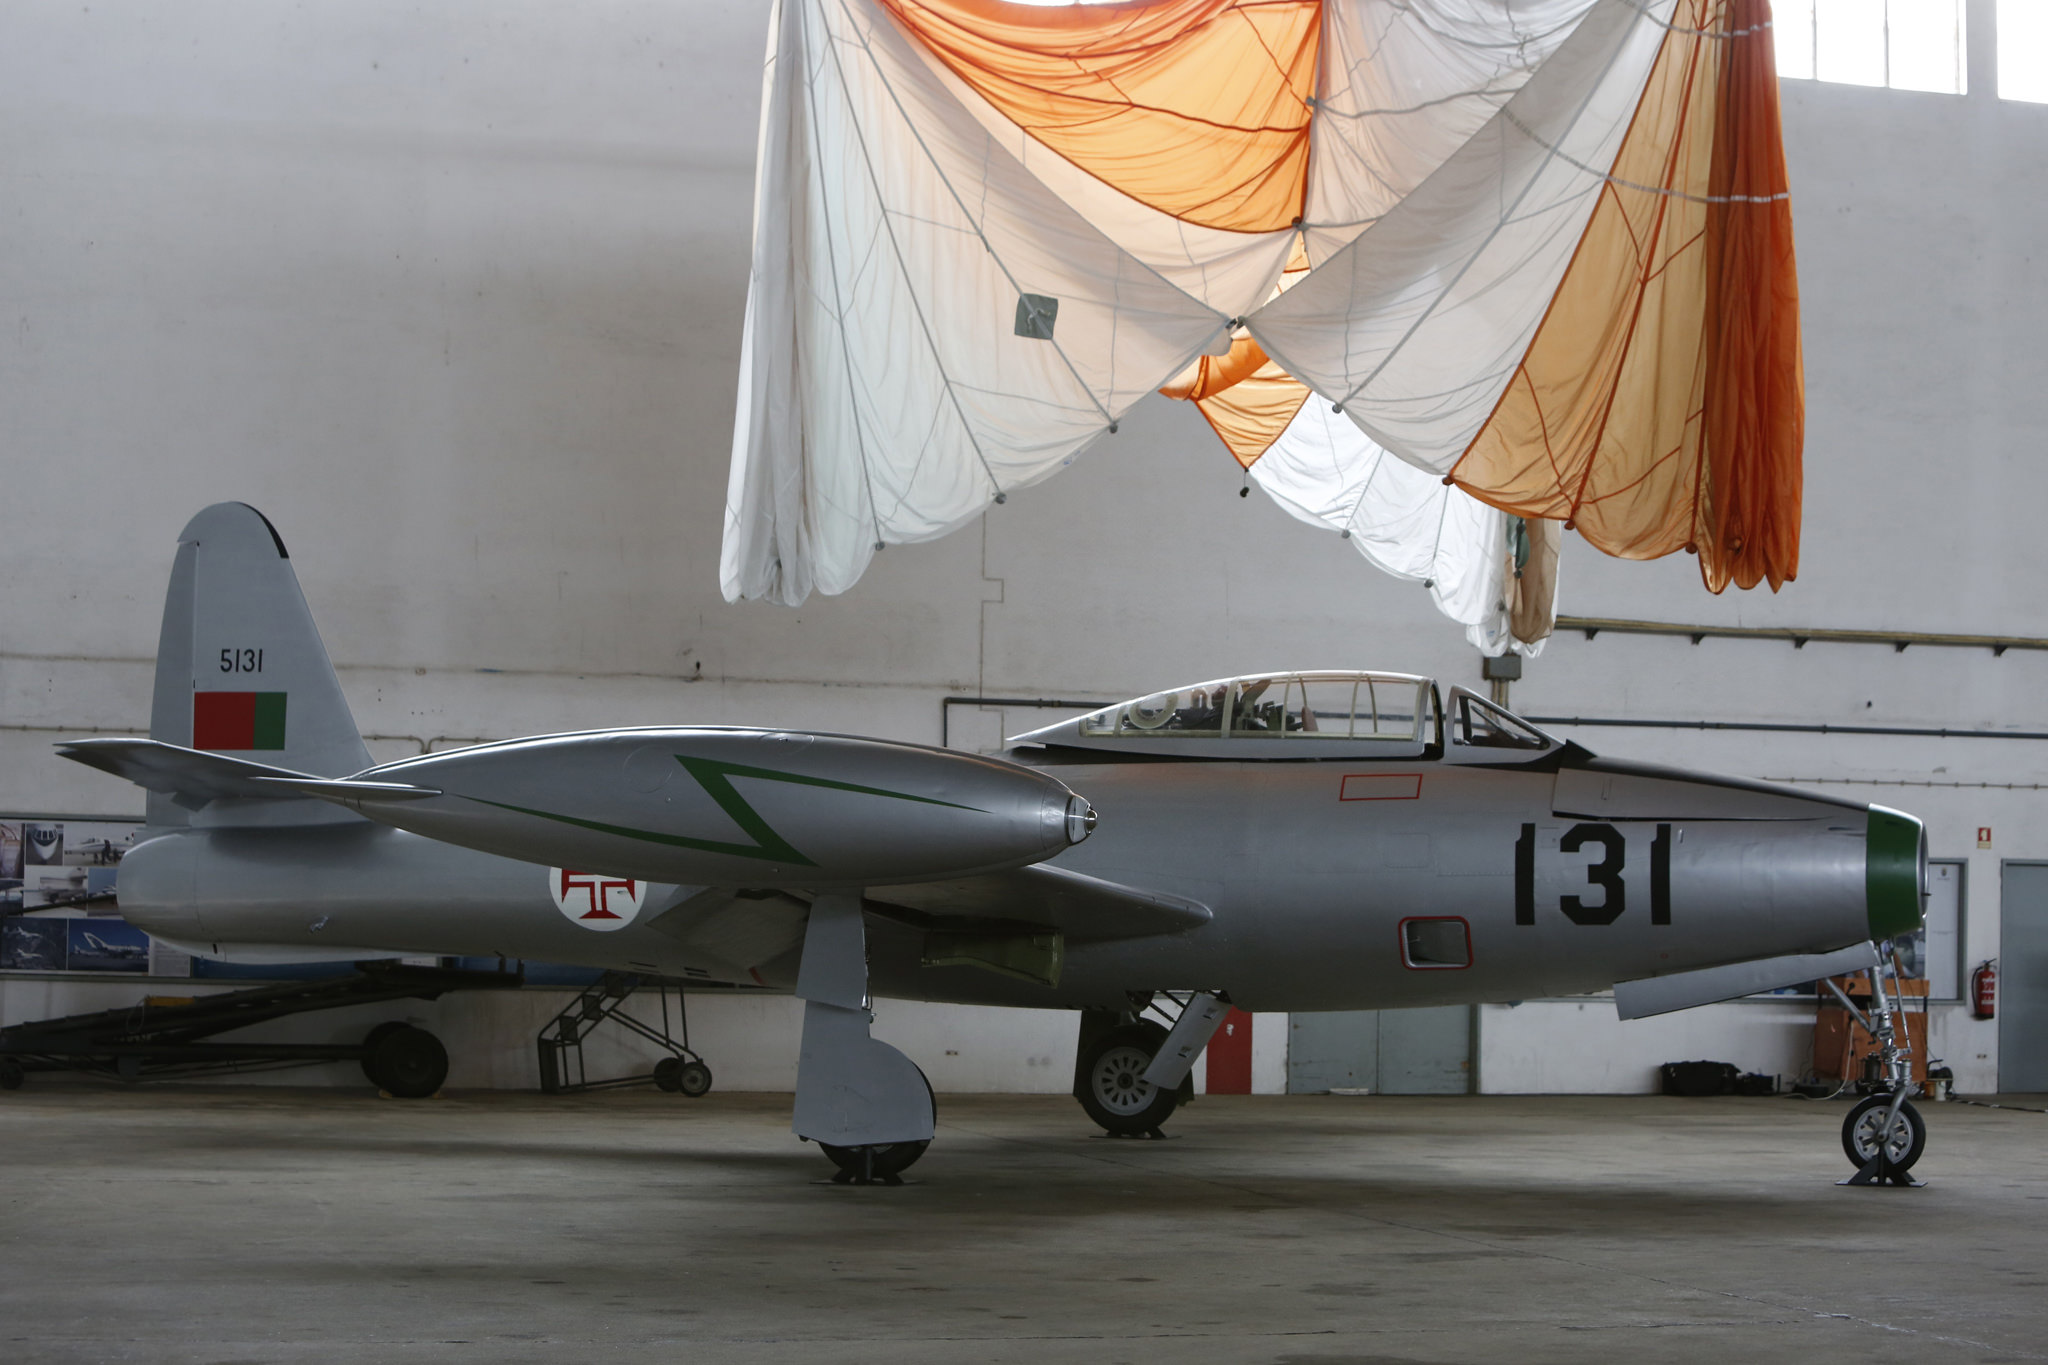 Cerimónia de entrega do F-84G ao Museu do Ar